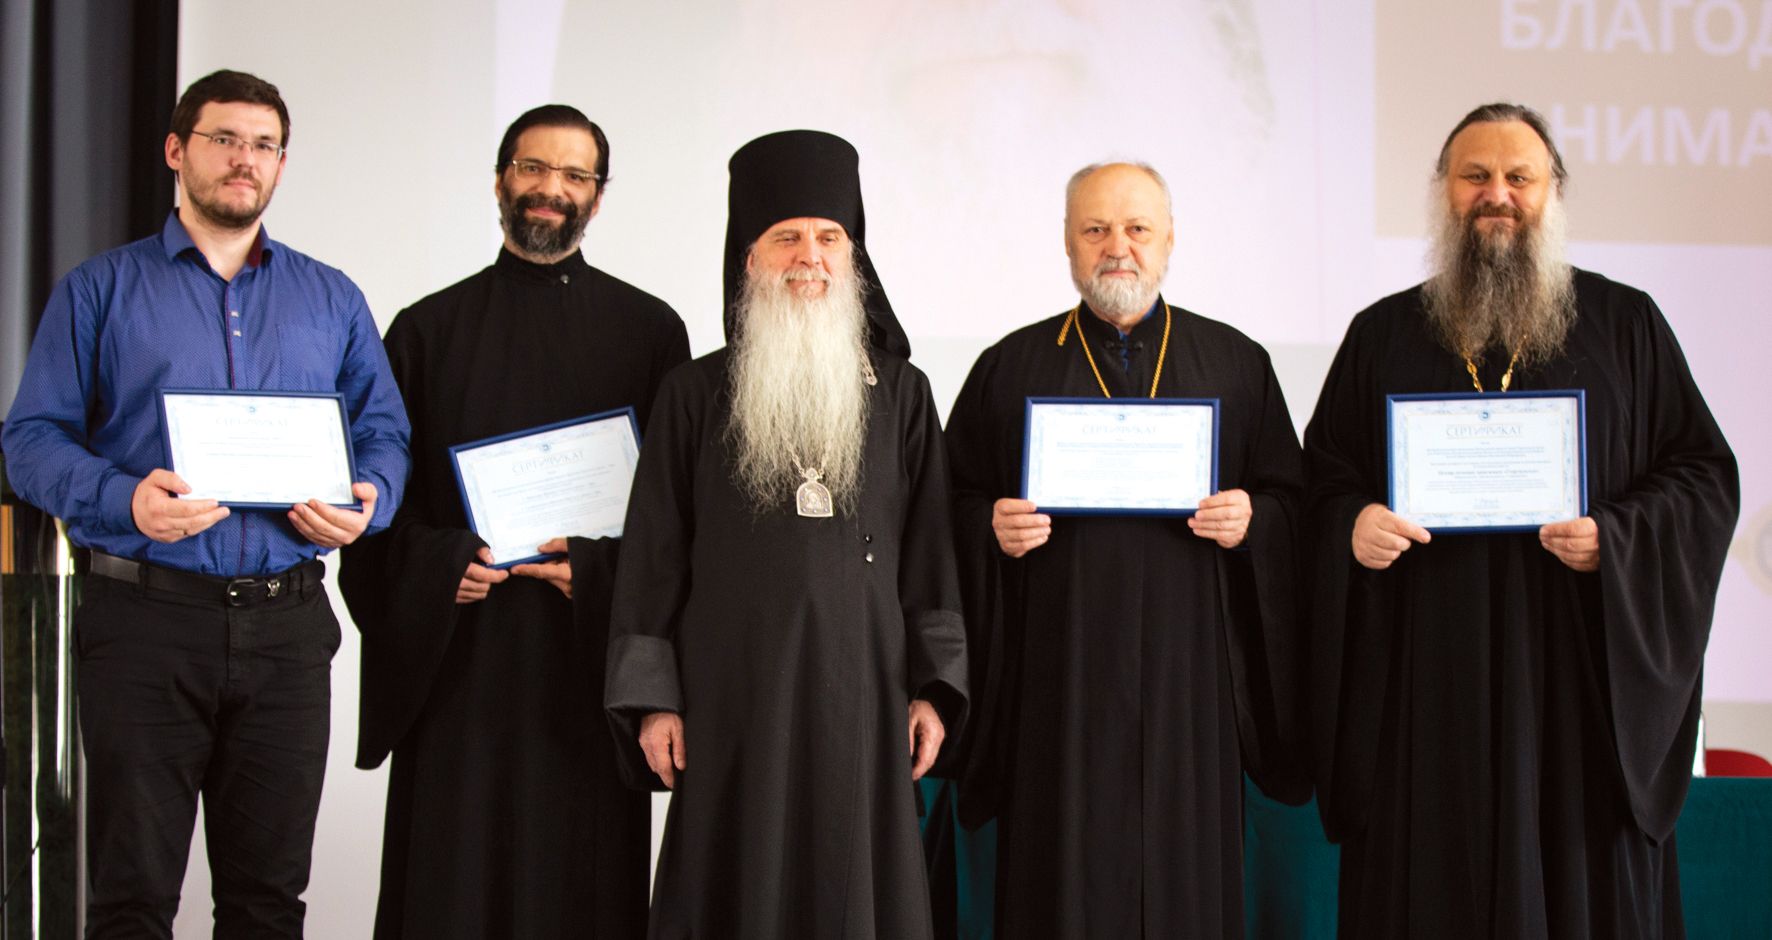 Ревдинский центр духовного попечения сертифицирован РПЦ